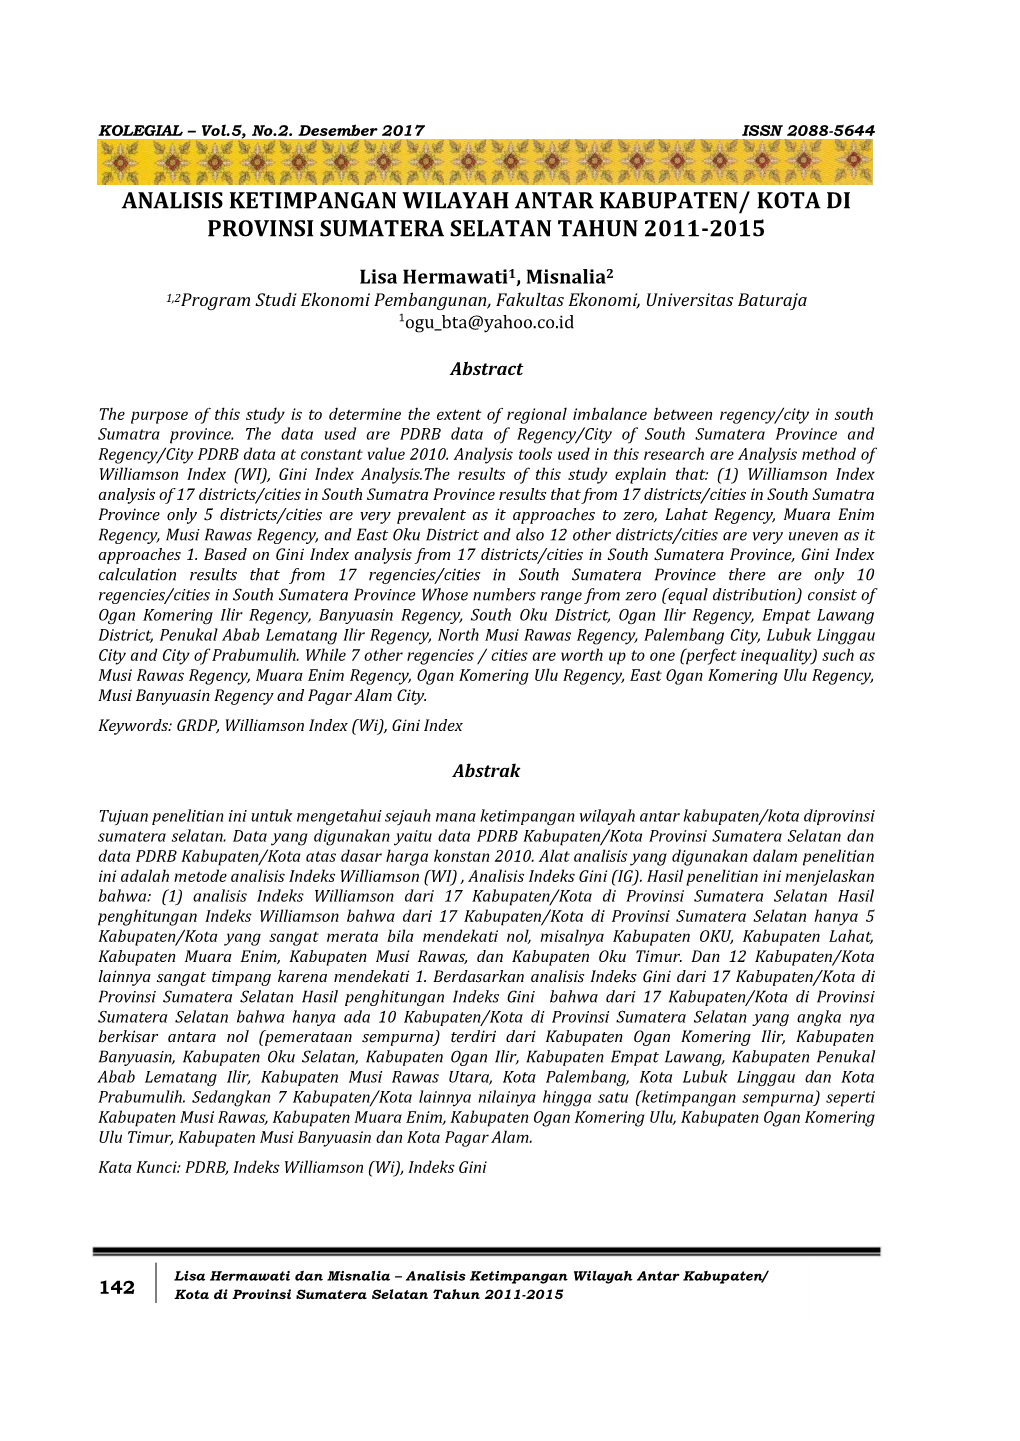 Analisis Ketimpangan Wilayah Antar Kabupaten/ Kota Di Provinsi Sumatera Selatan Tahun 2011-2015